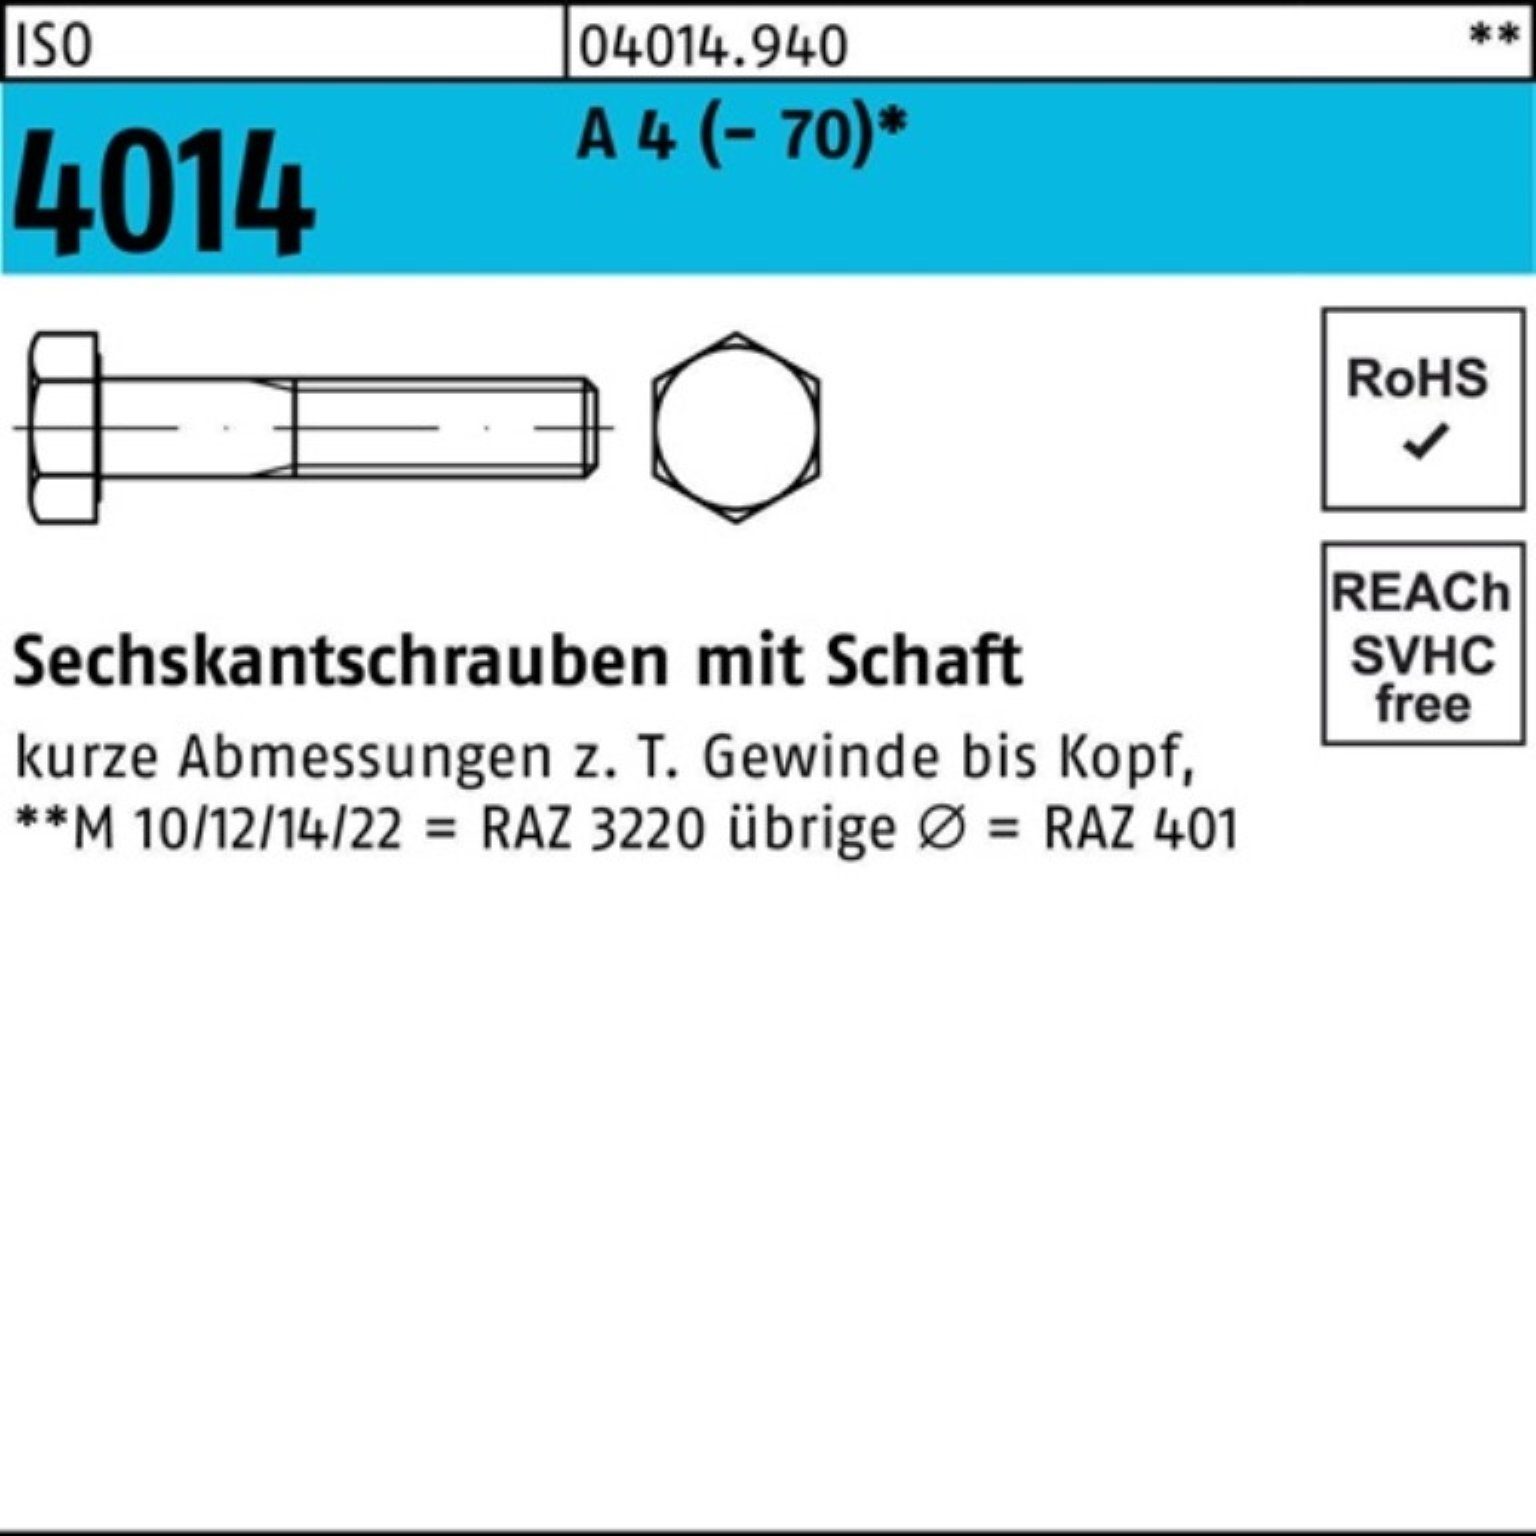 Bufab Sechskantschraube 120 Pack St (70) 4014 ISO 4 A 10 M22x 100er Schaft Sechskantschraube